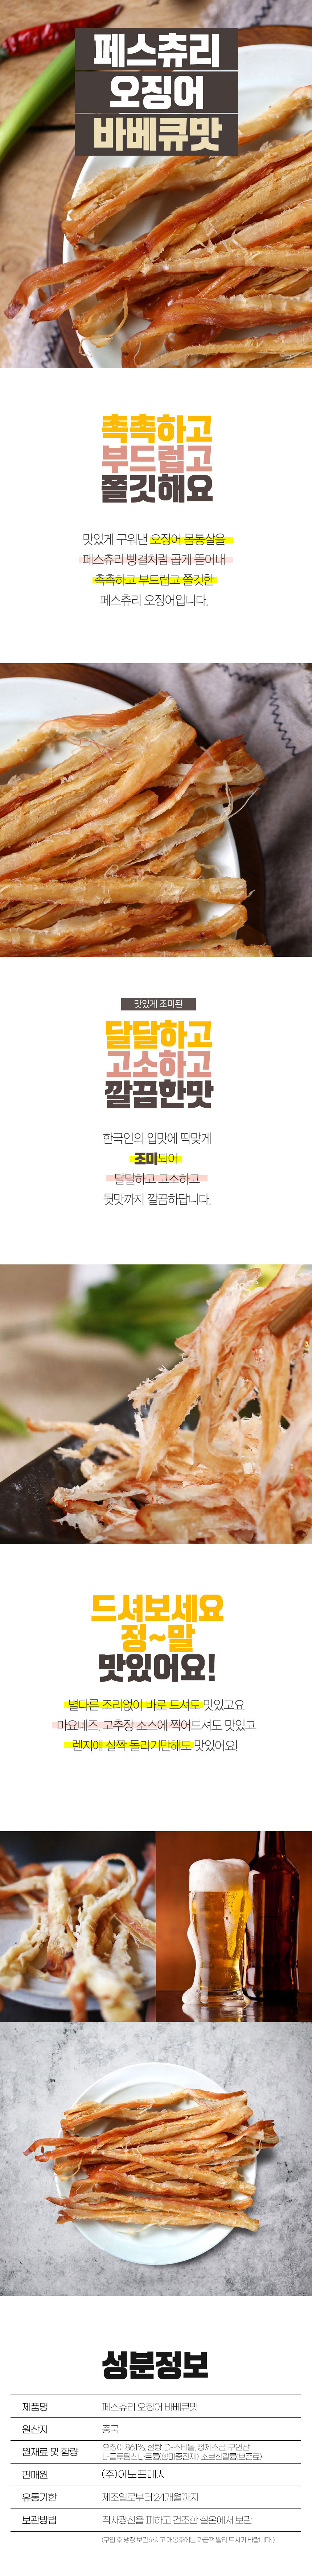 페스츄리오징어 오리지널 바베큐맛(500g/1kg)